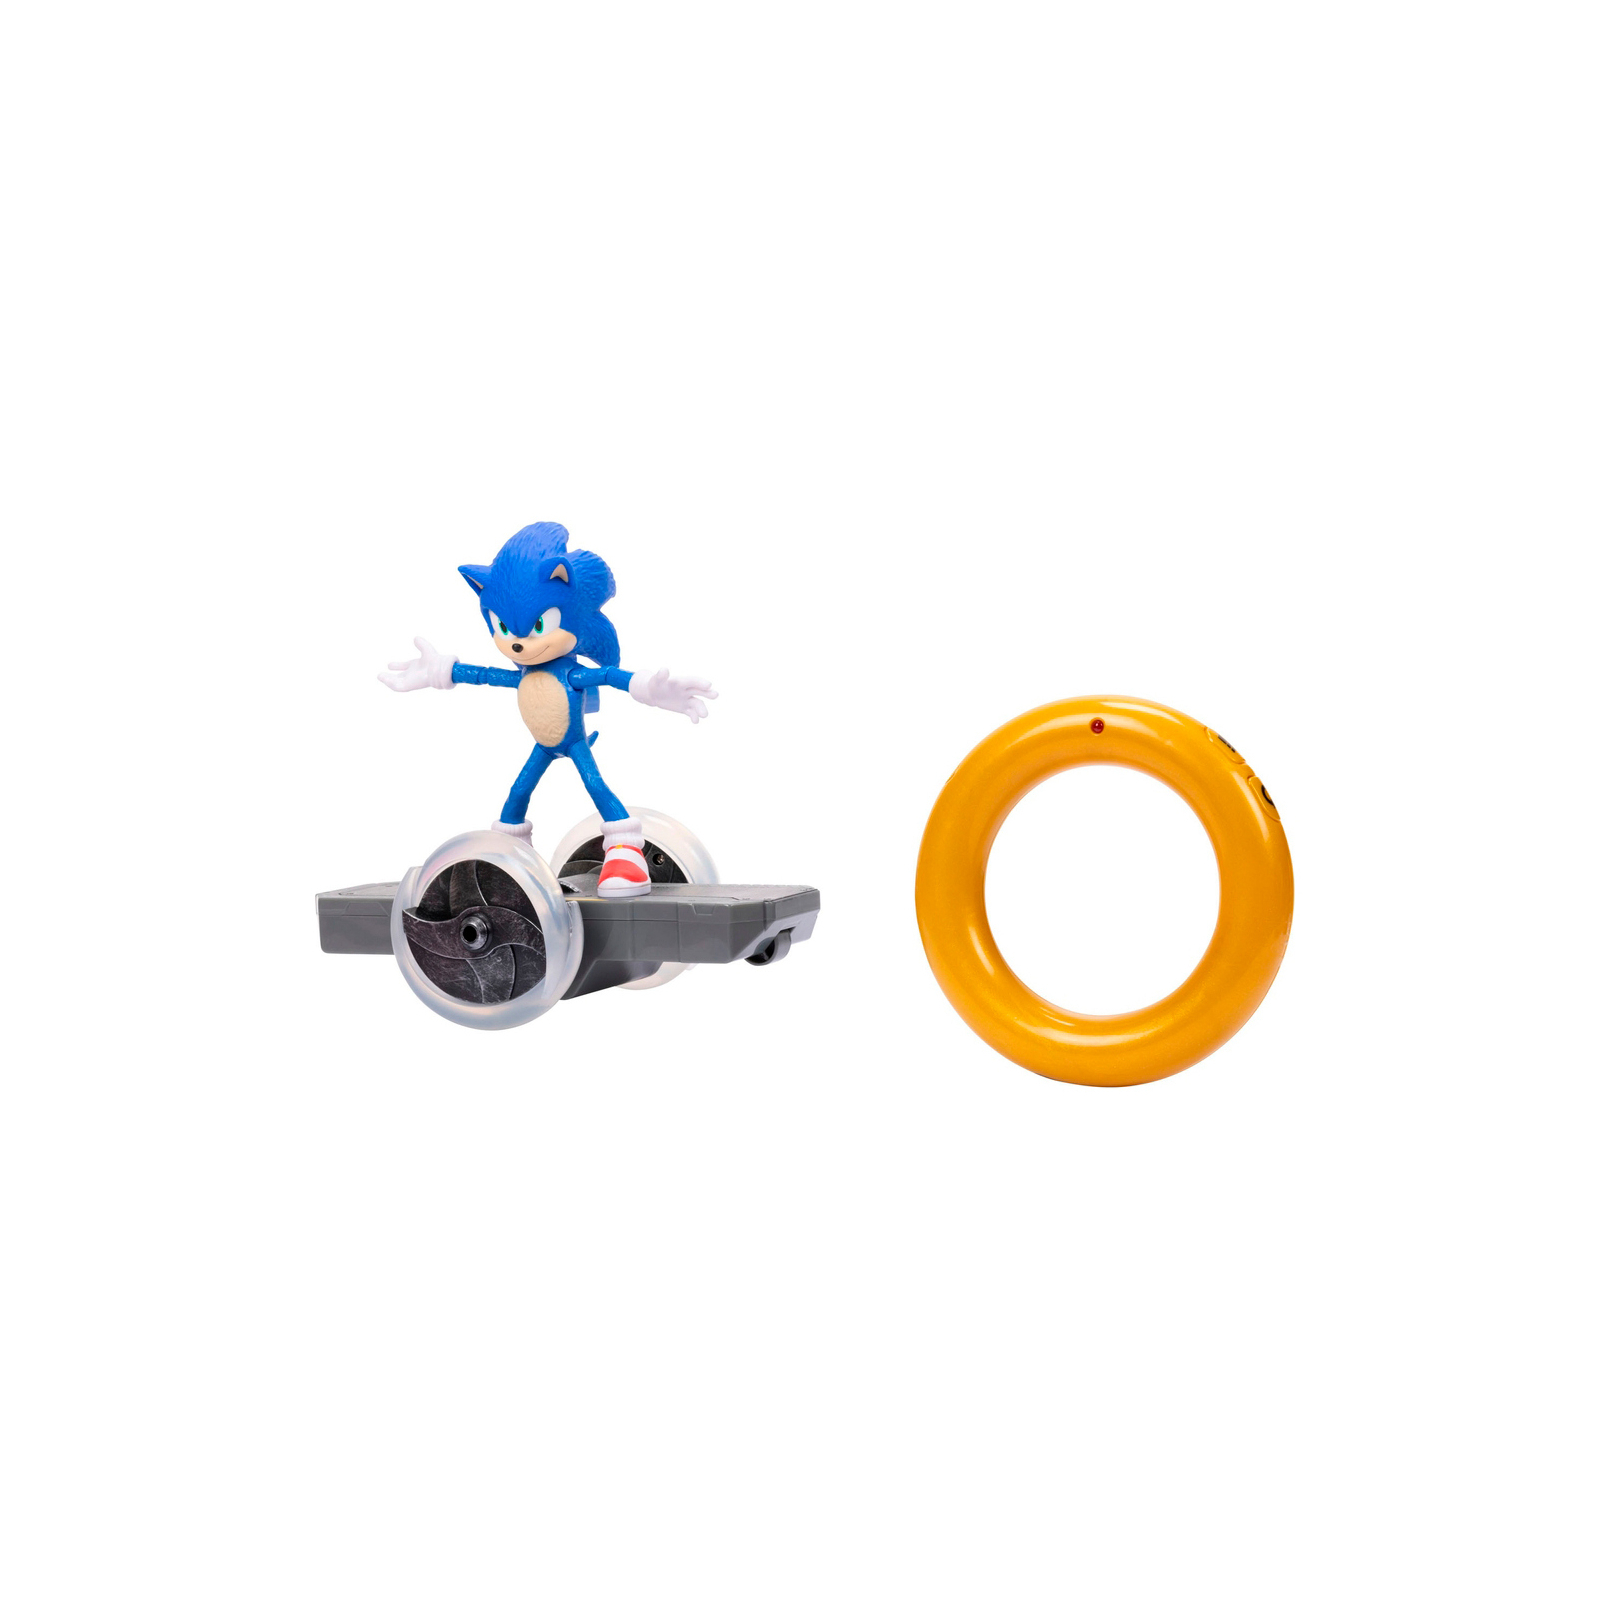 Фигурка Sonic the Hedgehog с артикуляцией на радиоуправлении (409244) изображение 2